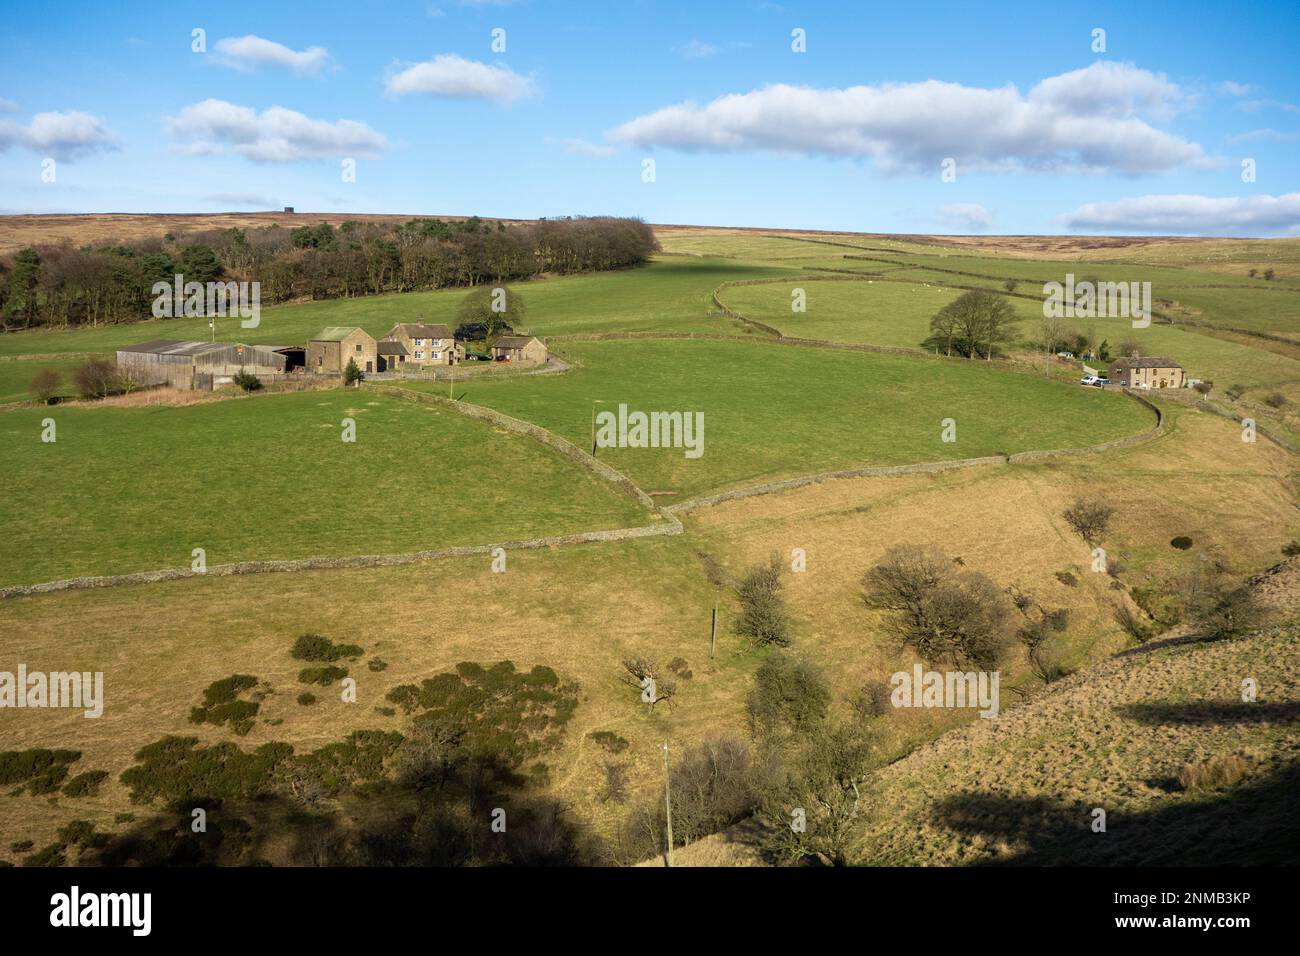 Fermes isolées dans le parc national de Peak District Derbyshire Angleterre Royaume-Uni Banque D'Images